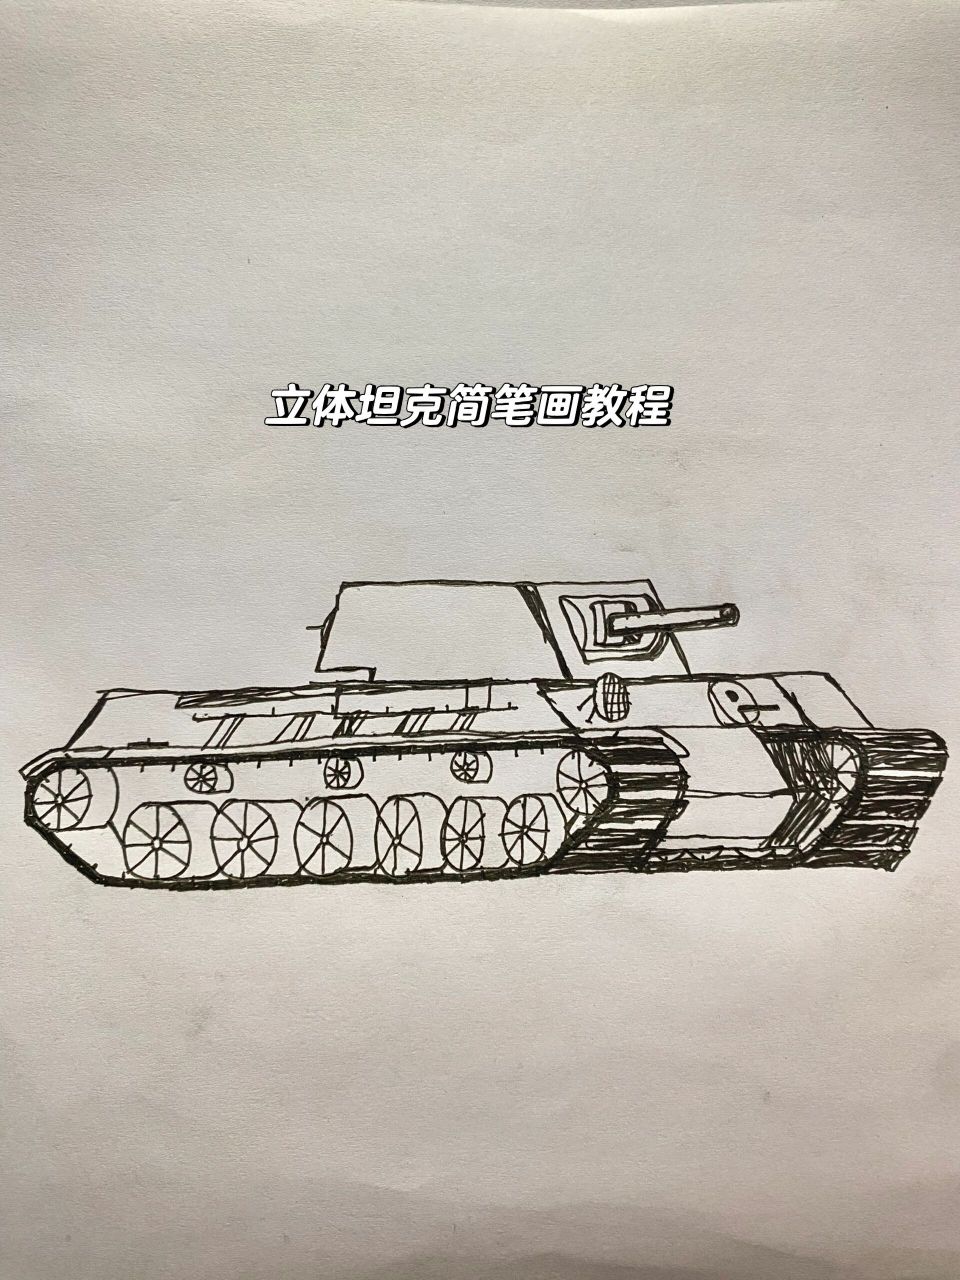 k v1立体坦克简笔画教程 苏联k v1